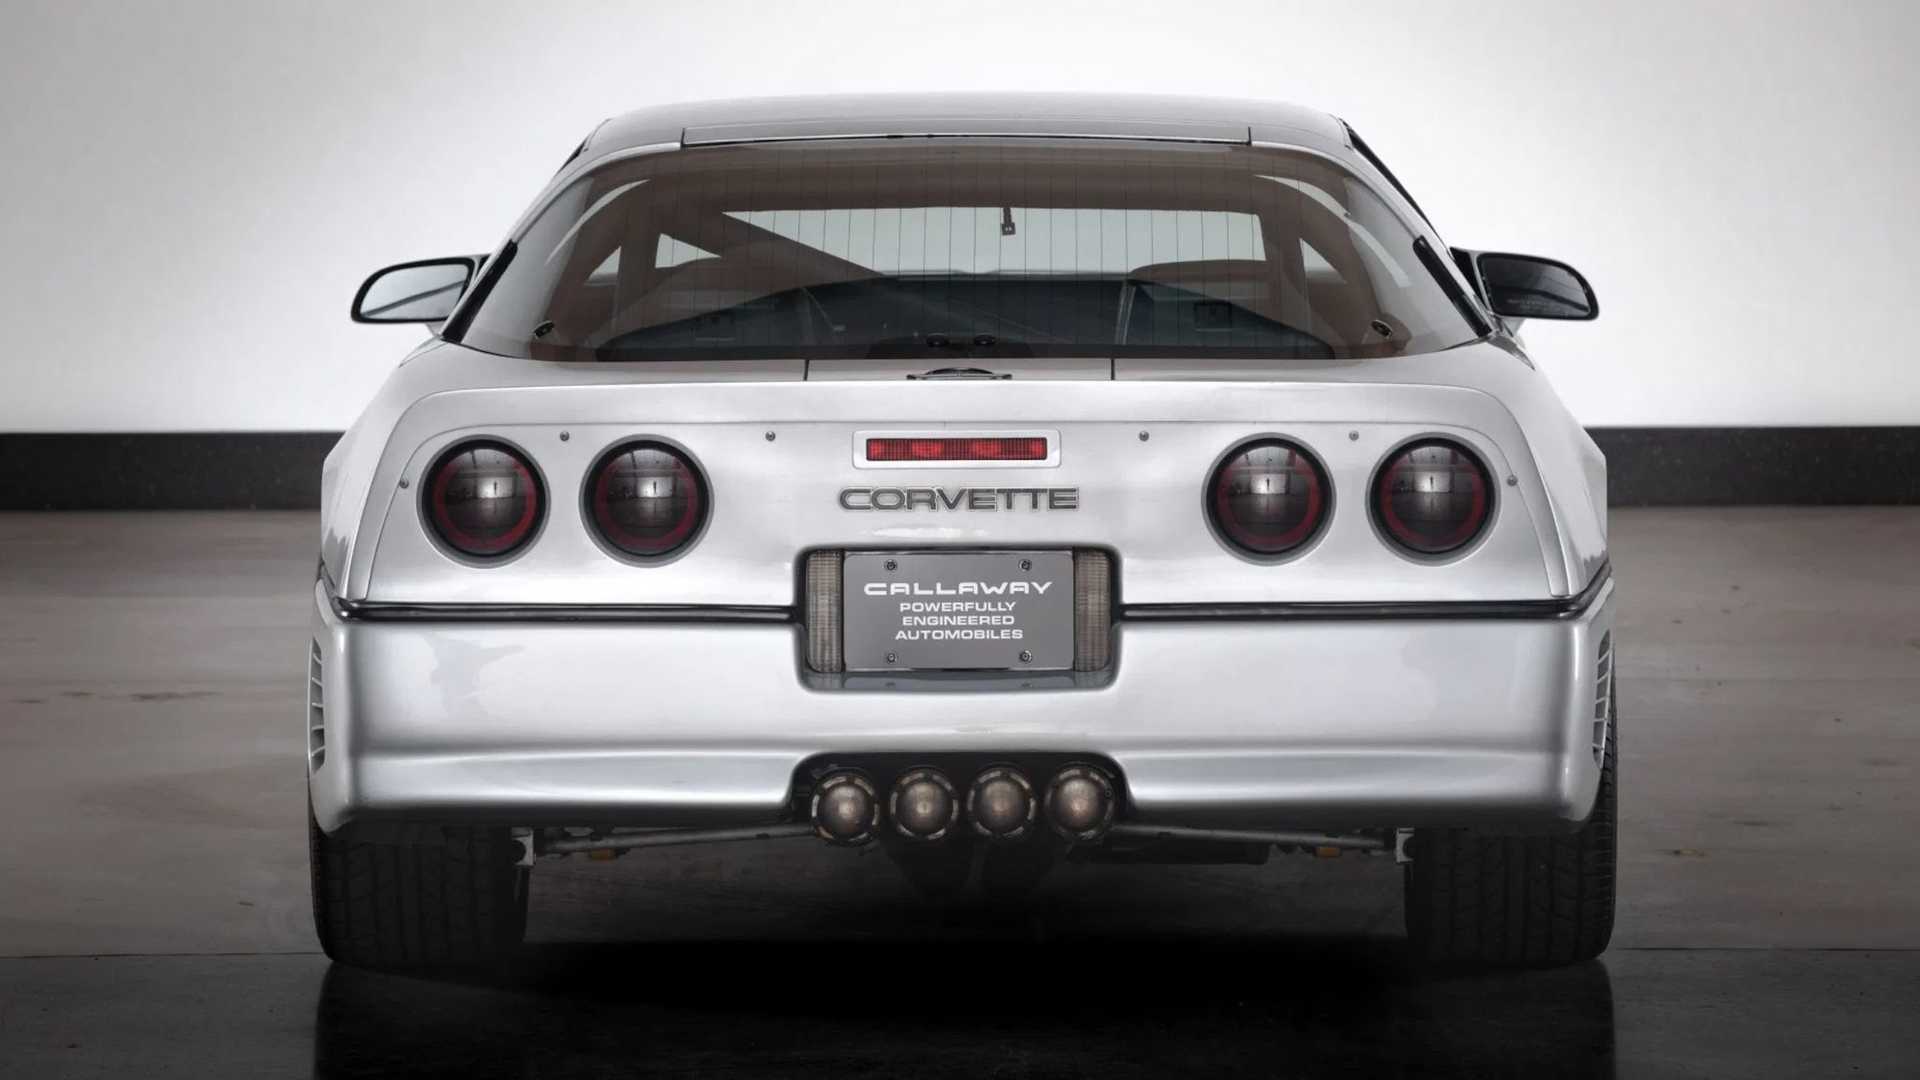 Tampilan mobil Chevrolet Corvette hasil modifikasi Callaway Cars